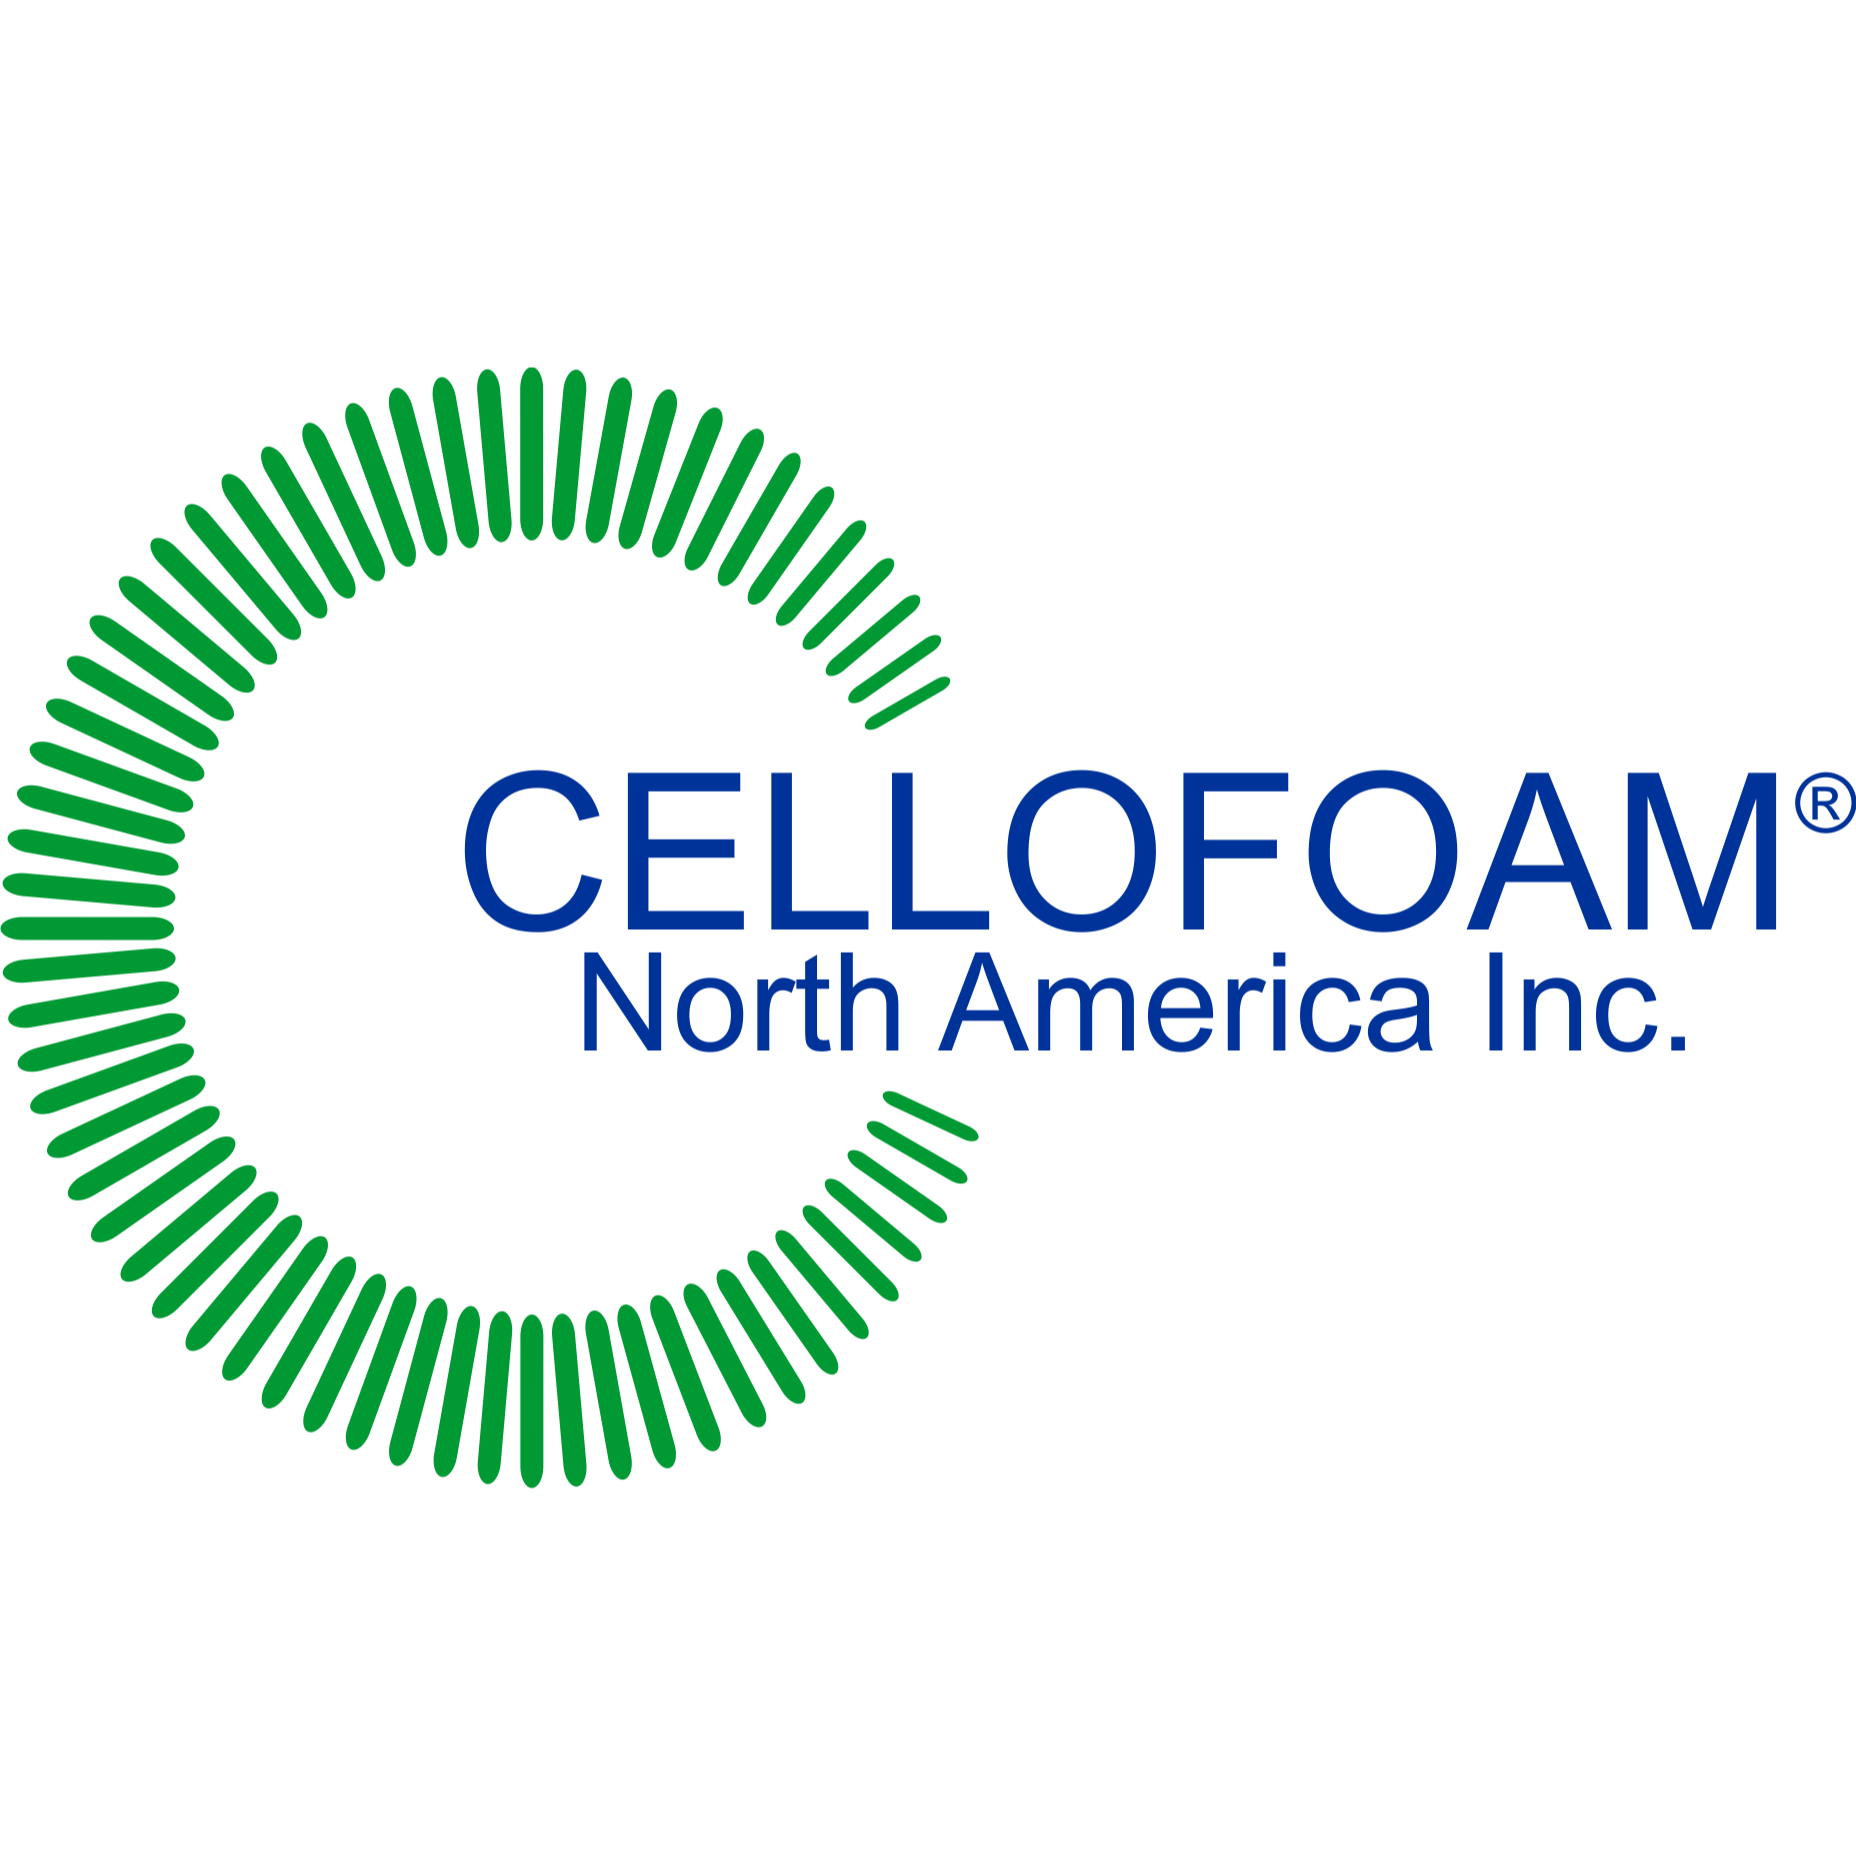 Cellofoam North America Inc. Photo